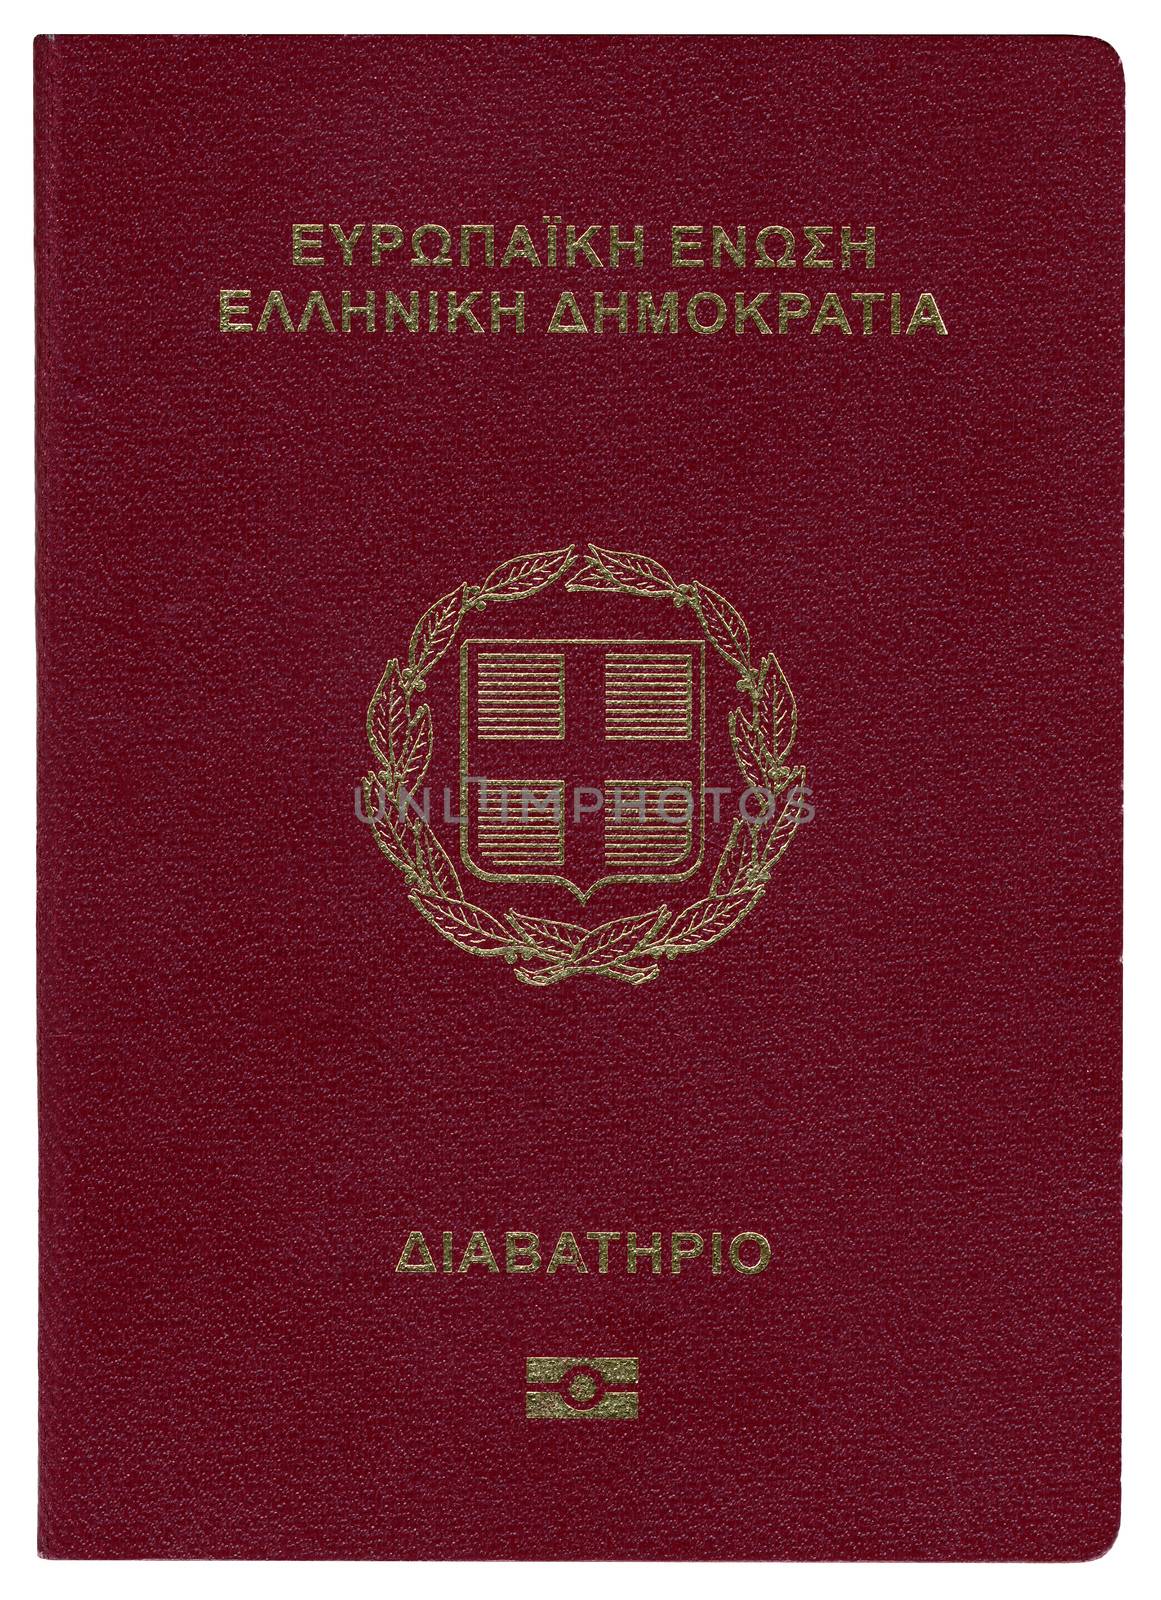 Greek passport by Portokalis